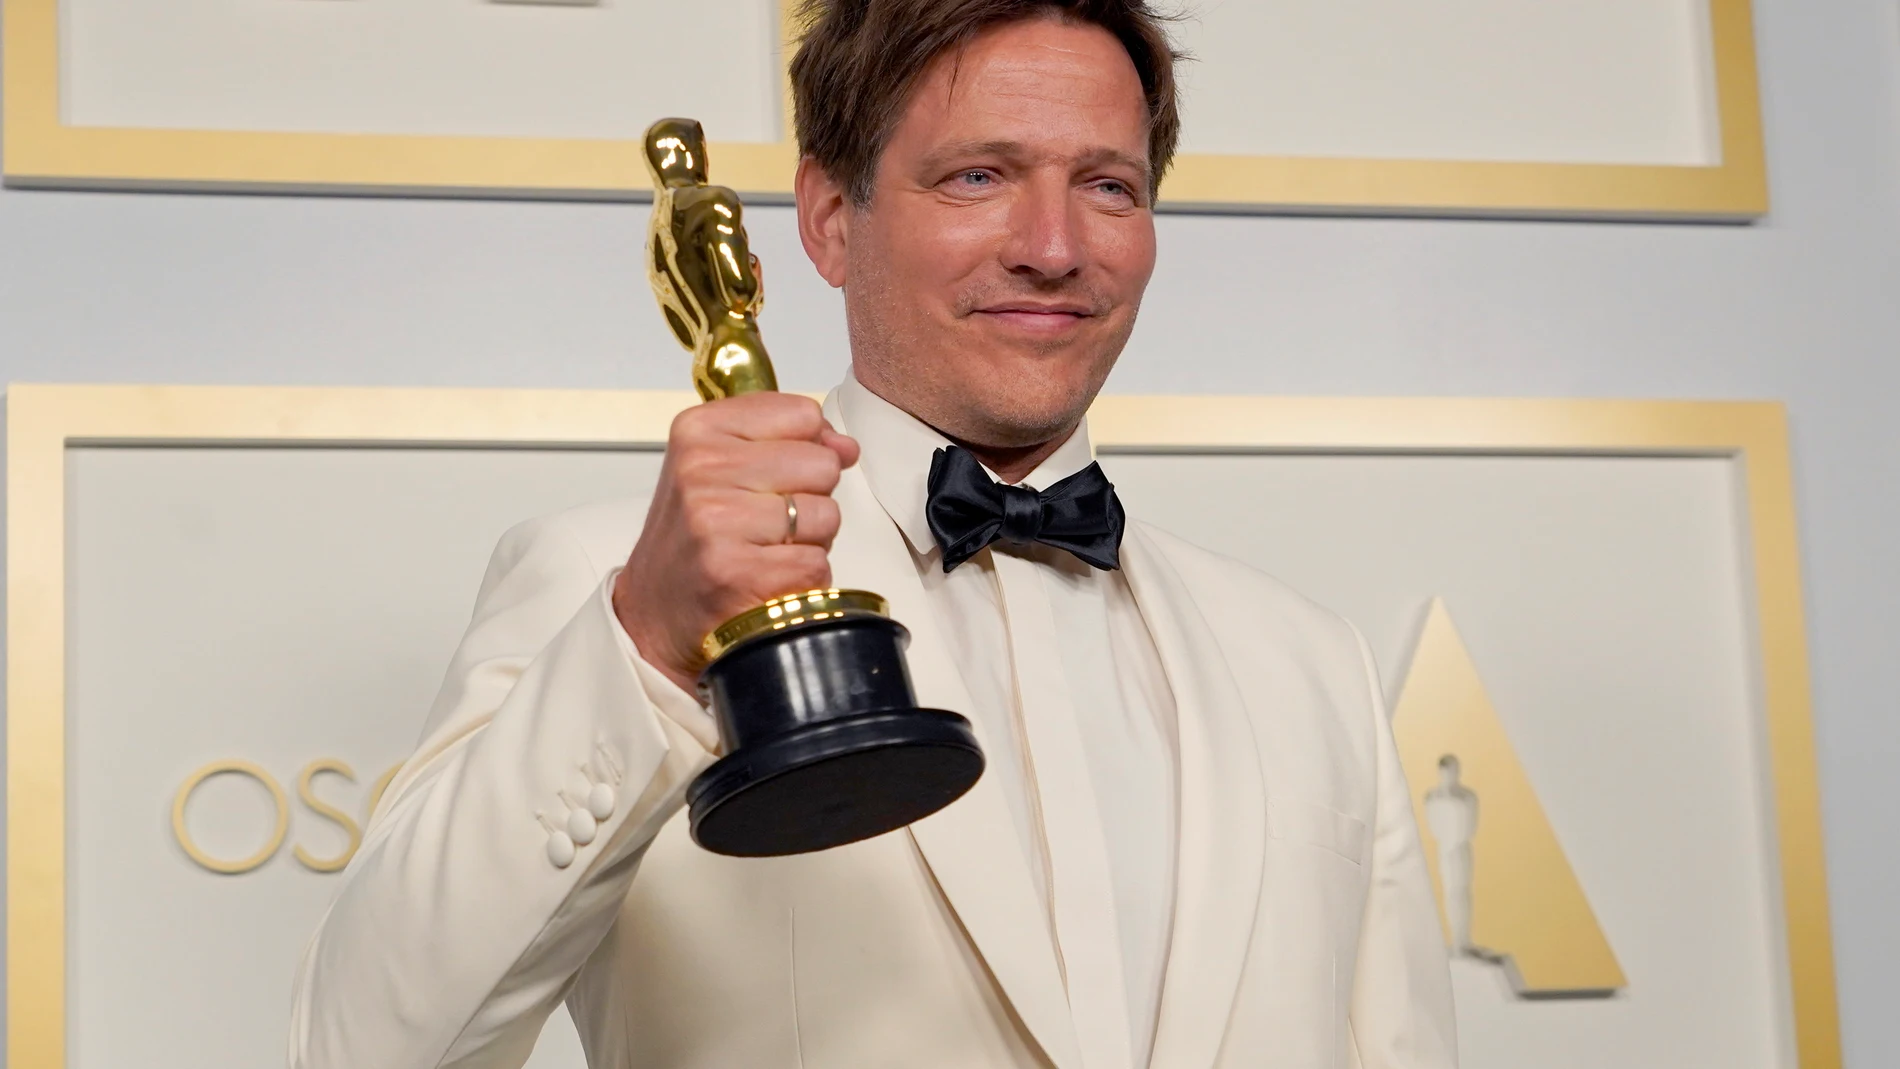 Thomas Vinterberg, ganador del Oscar a Mejor Película Internacional por "Otra ronda" - EFE/EPA/Chris Pizzello / POOL *** Local Caption *** 55864152